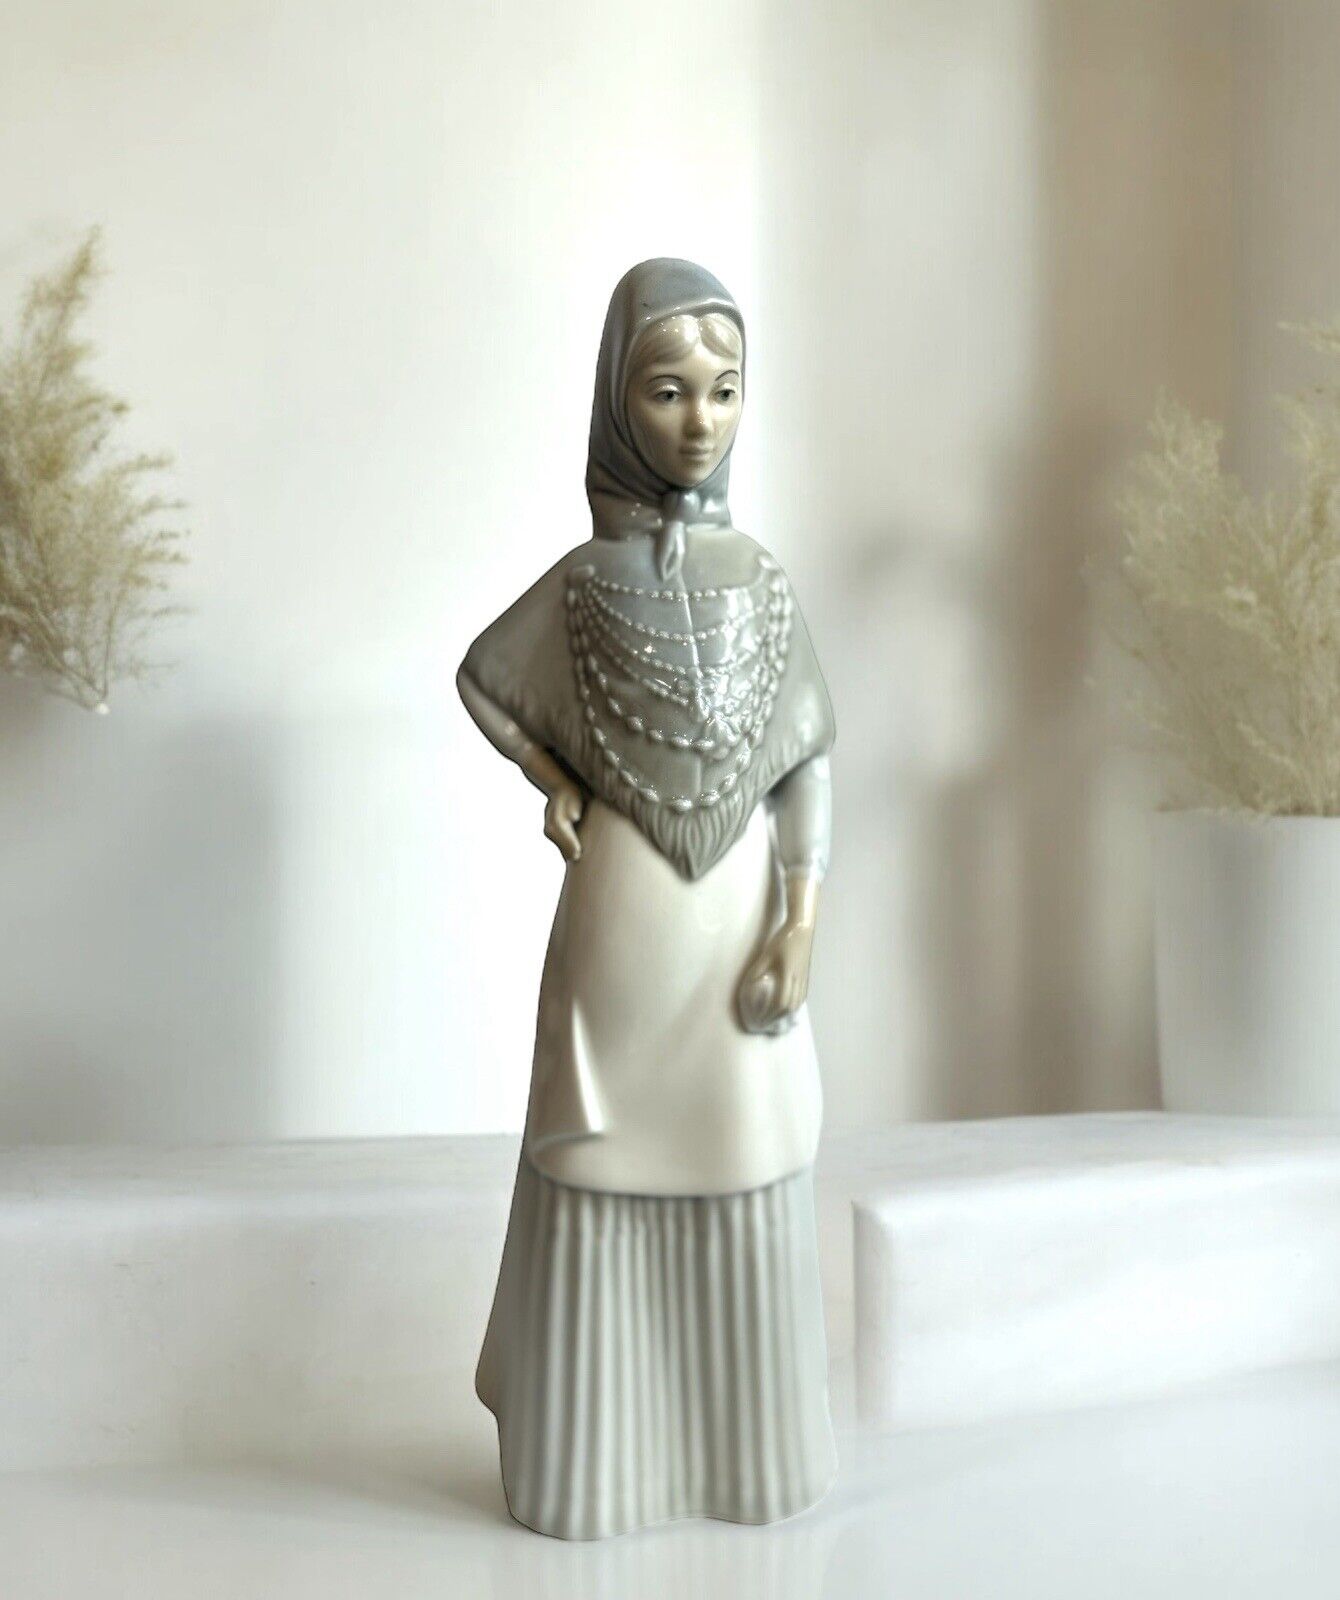 Porcelain Woman Figurine by Porcelanas Miquel Requena S.A.